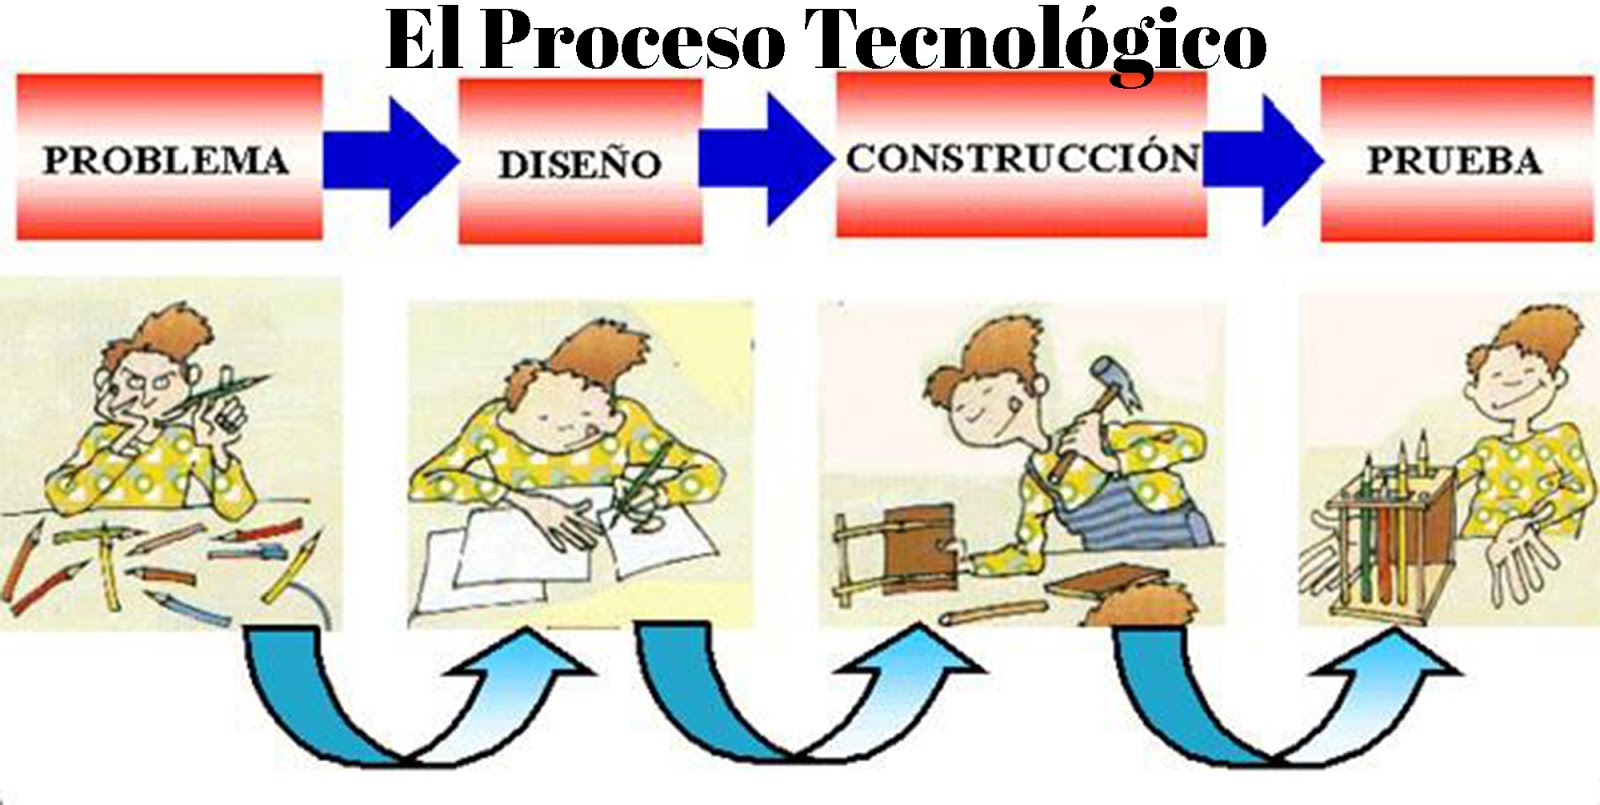 Procesos tecnologicos son fases sucesivas de operaciones que permiten trnsformar recursos para lograr objetivos y desarrollar